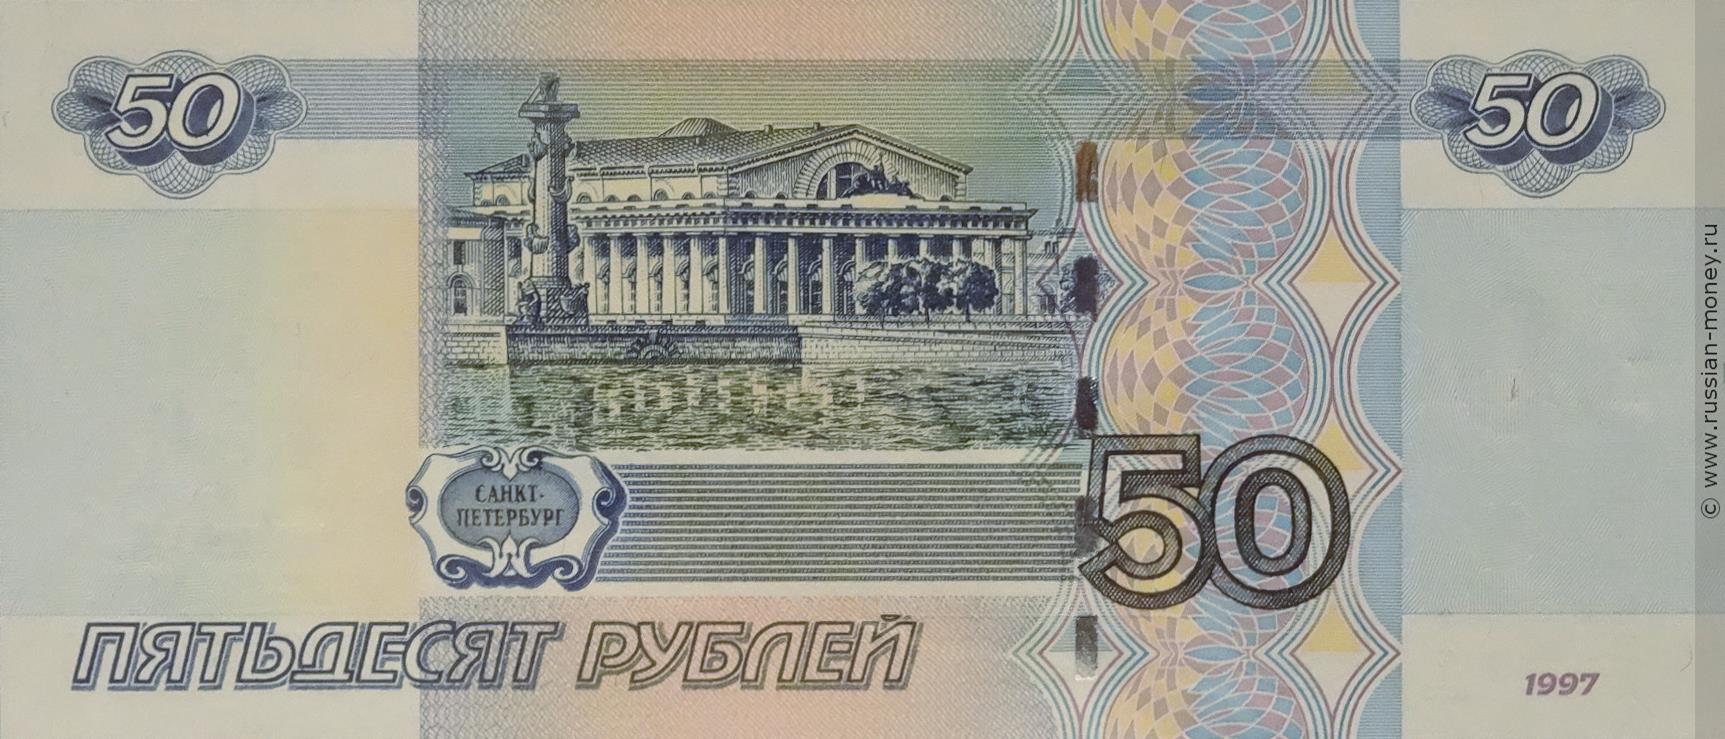 500 рублей 1997 года редкие разновидности и их стоимость фото